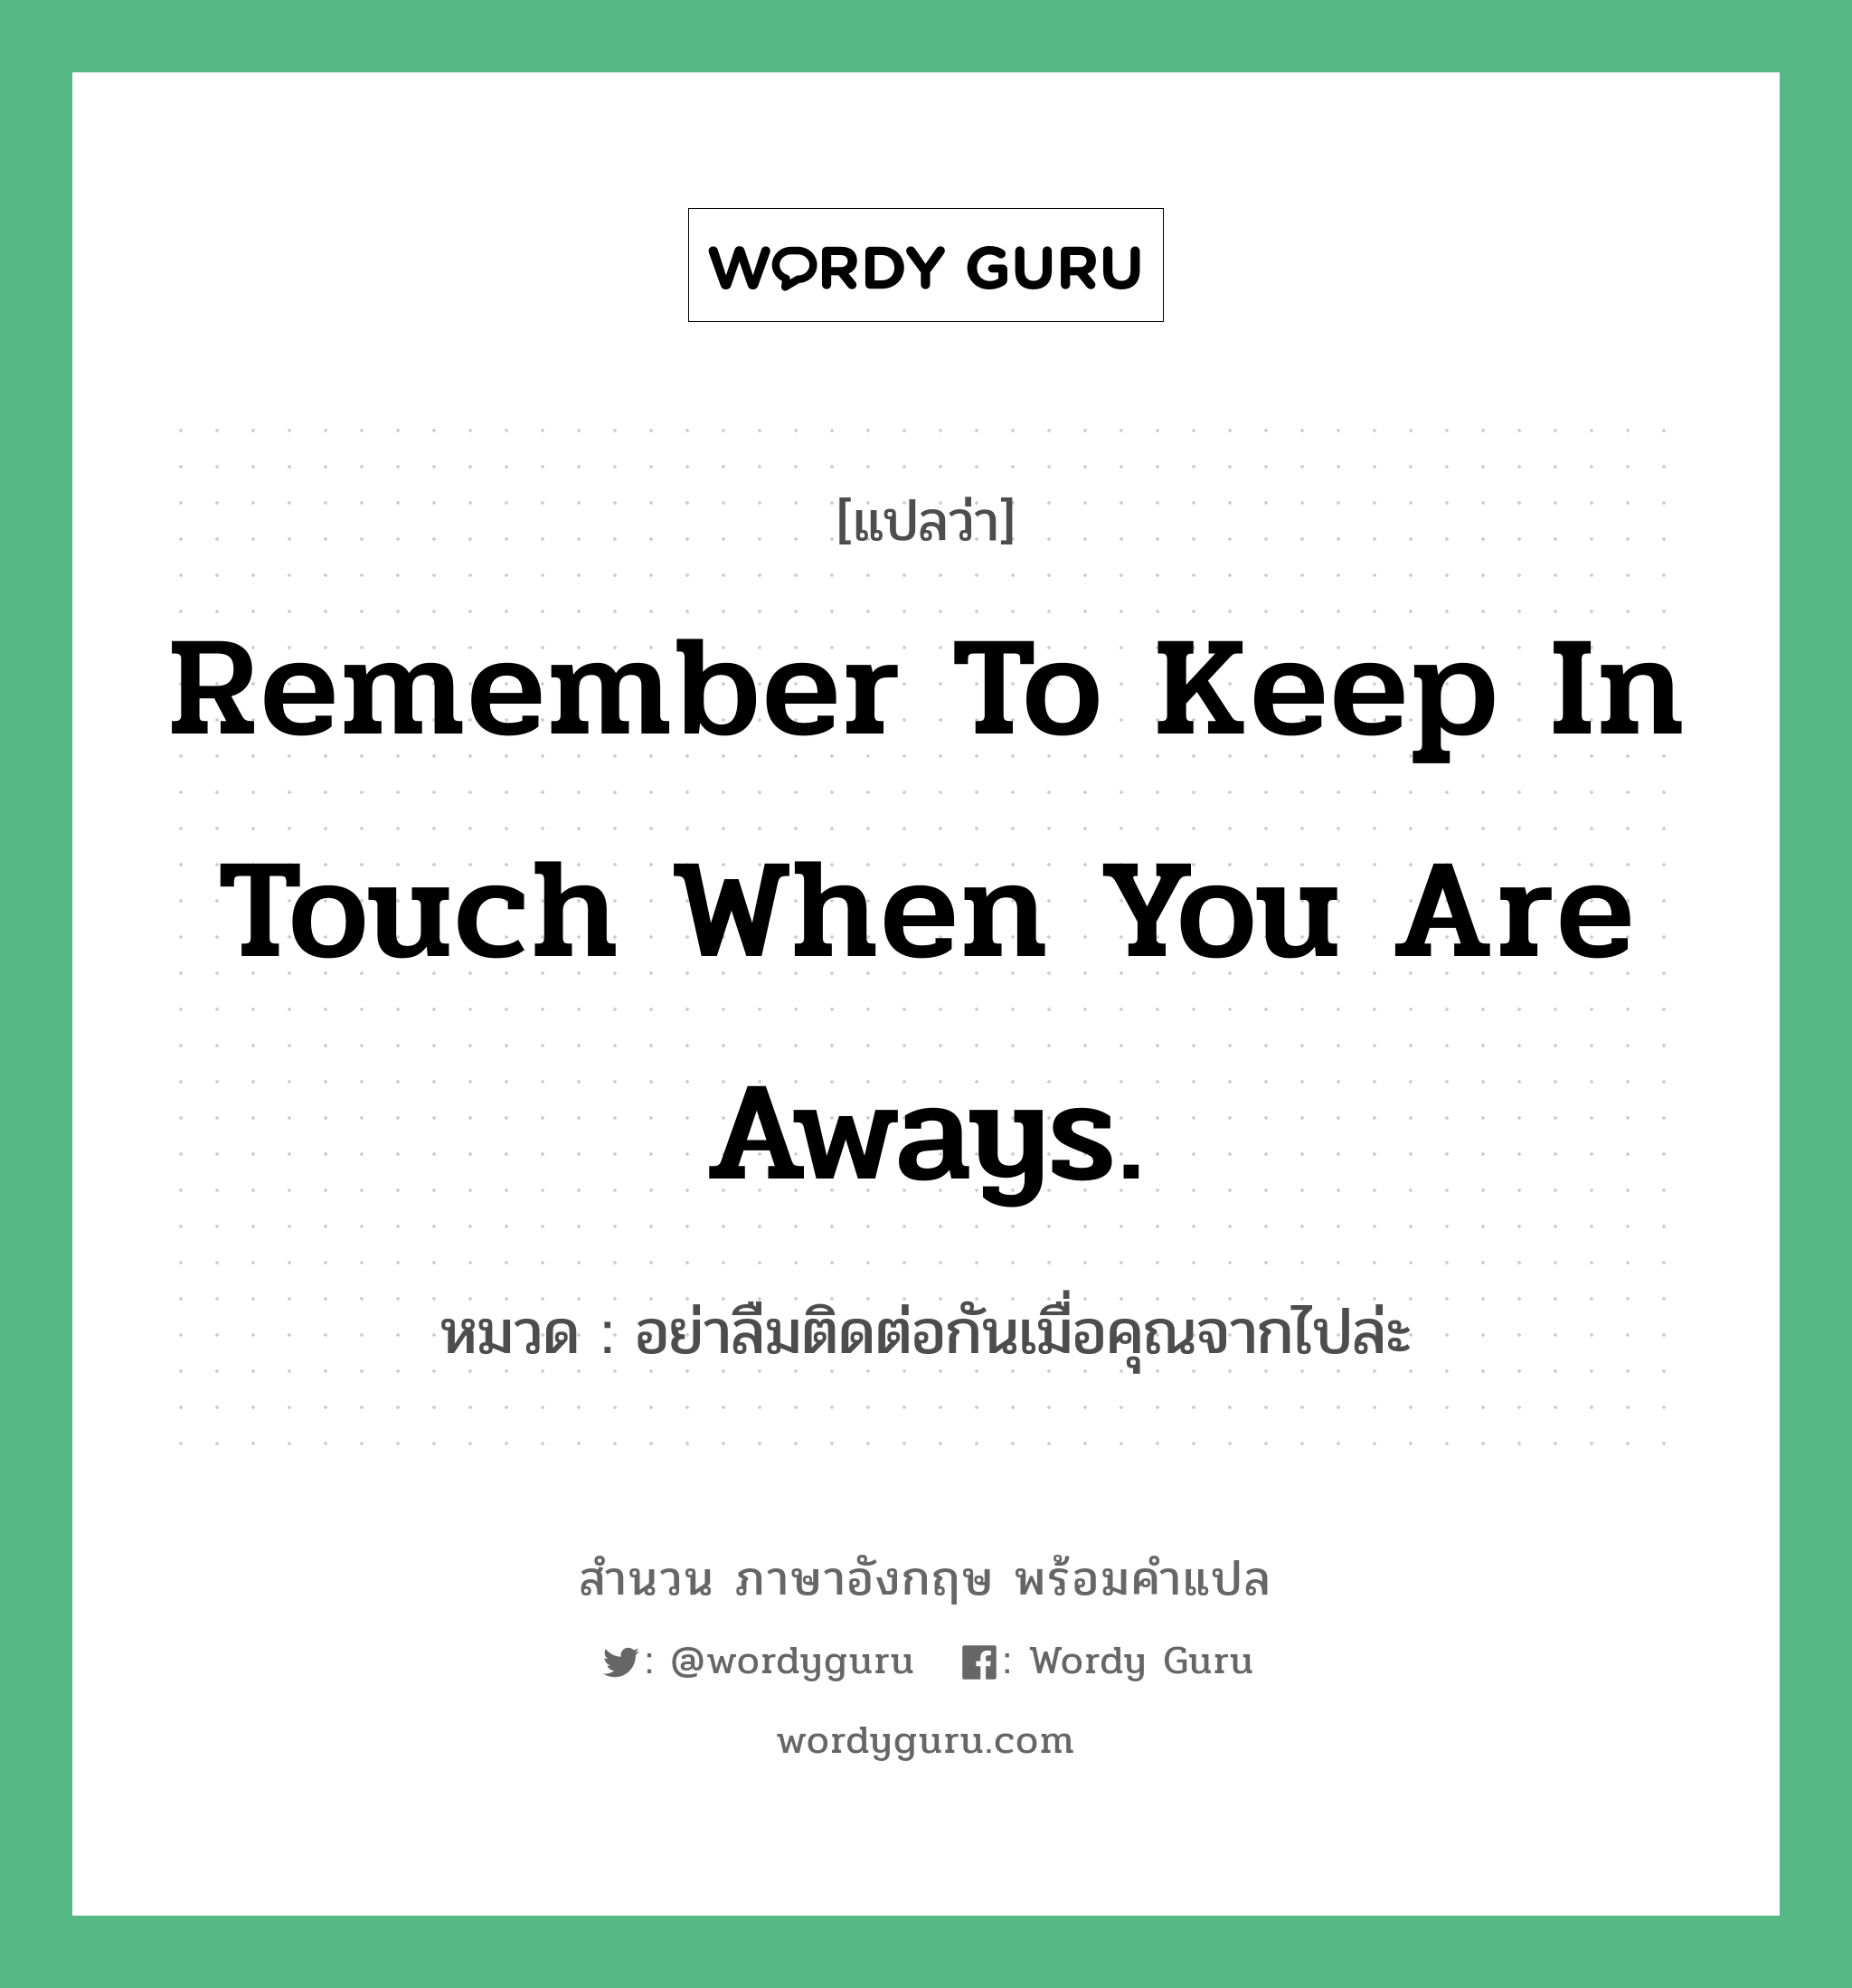 อย่าลืมติดต่อกันเมื่อคุณจากไปล่ะ ภาษาอังกฤษ?, สำนวนภาษาอังกฤษ อย่าลืมติดต่อกันเมื่อคุณจากไปล่ะ แปลว่า อย่าลืมติดต่อกันเมื่อคุณจากไปล่ะ หมวด Remember to keep in touch when you are aways.